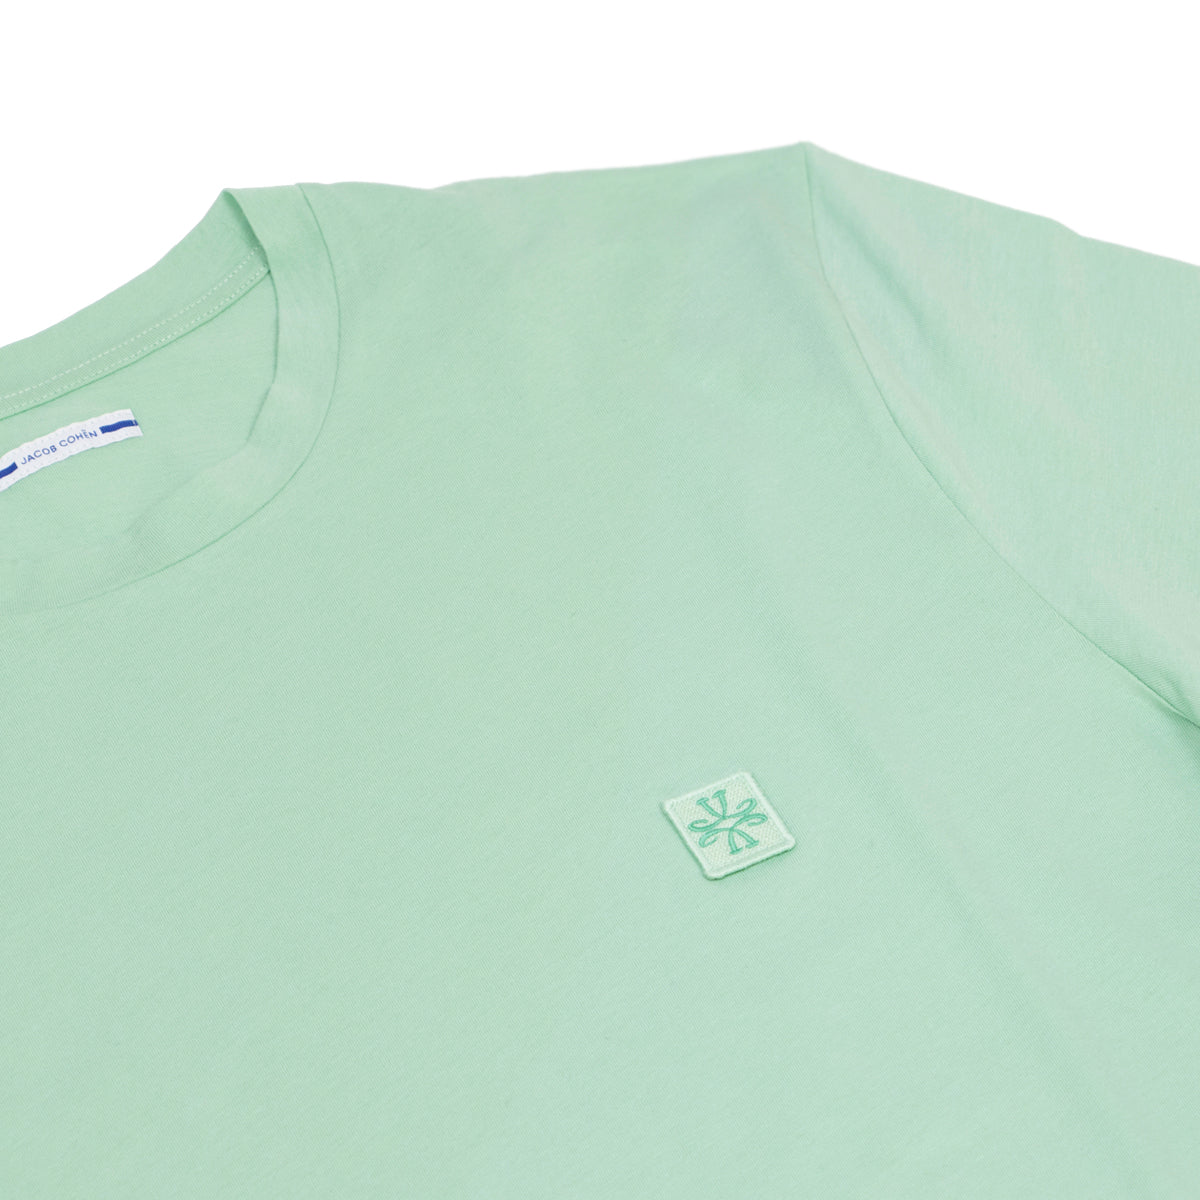 Mint Green 100% Cotton T-Shirt  Jacob Cohen   